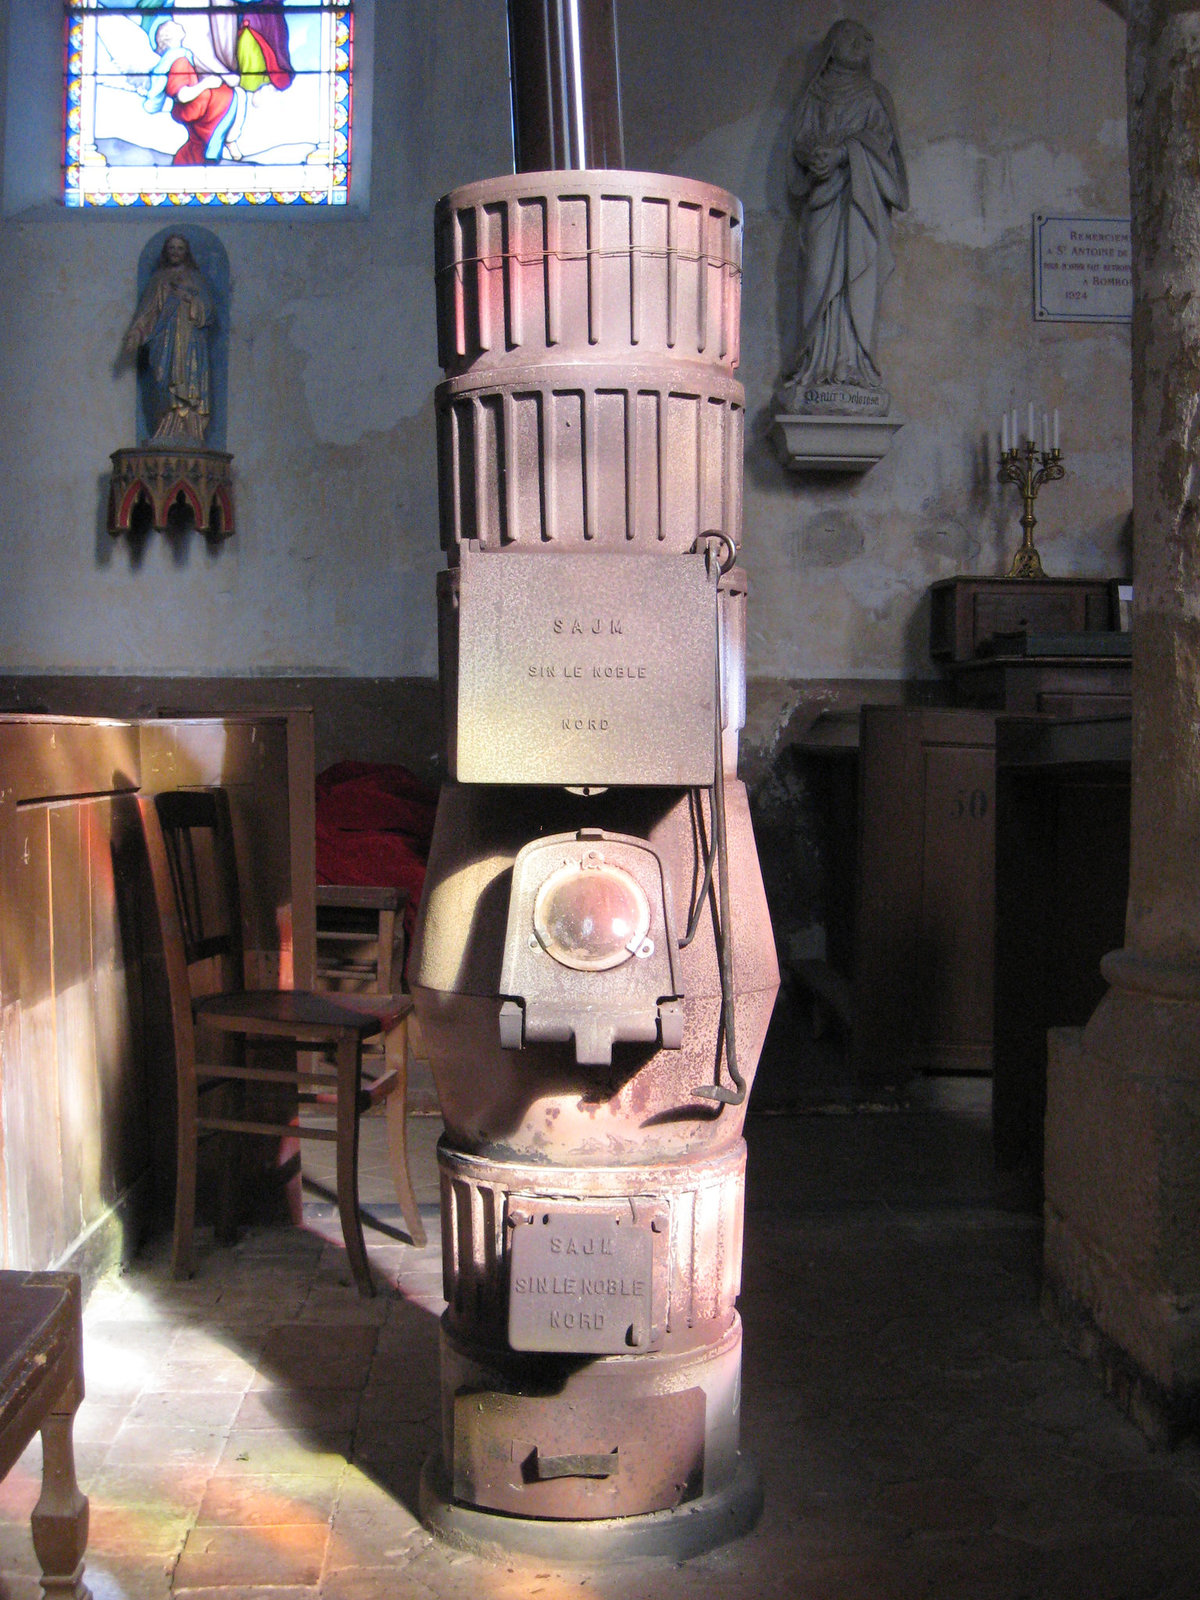 Le poêle à bois de l'église de Bombon